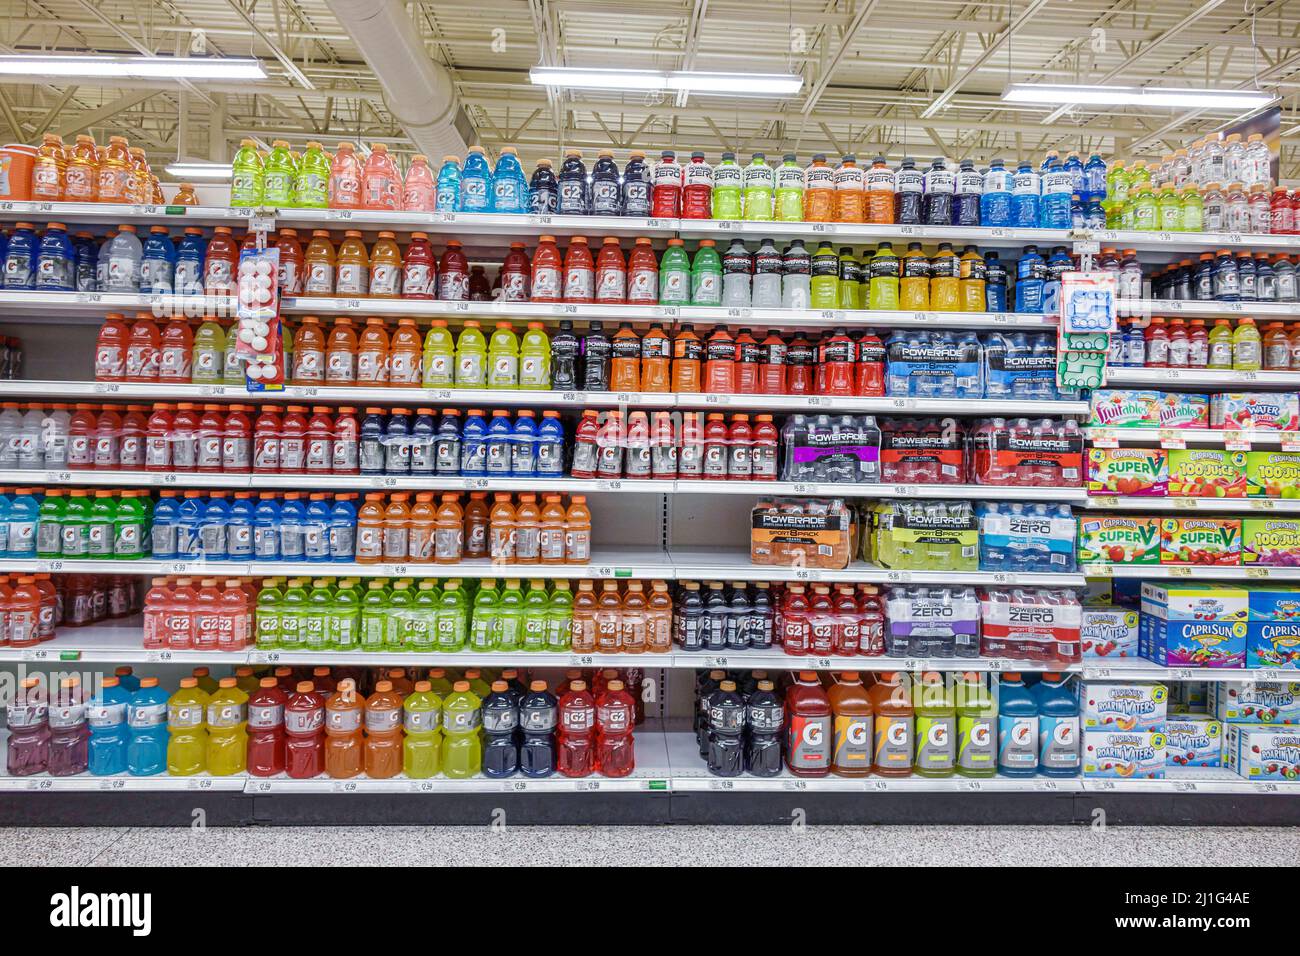 Orlando Florida, supermarché d'épicerie Publix, vente de bouteilles boissons pour sportifs, étagères à l'intérieur, Banque D'Images